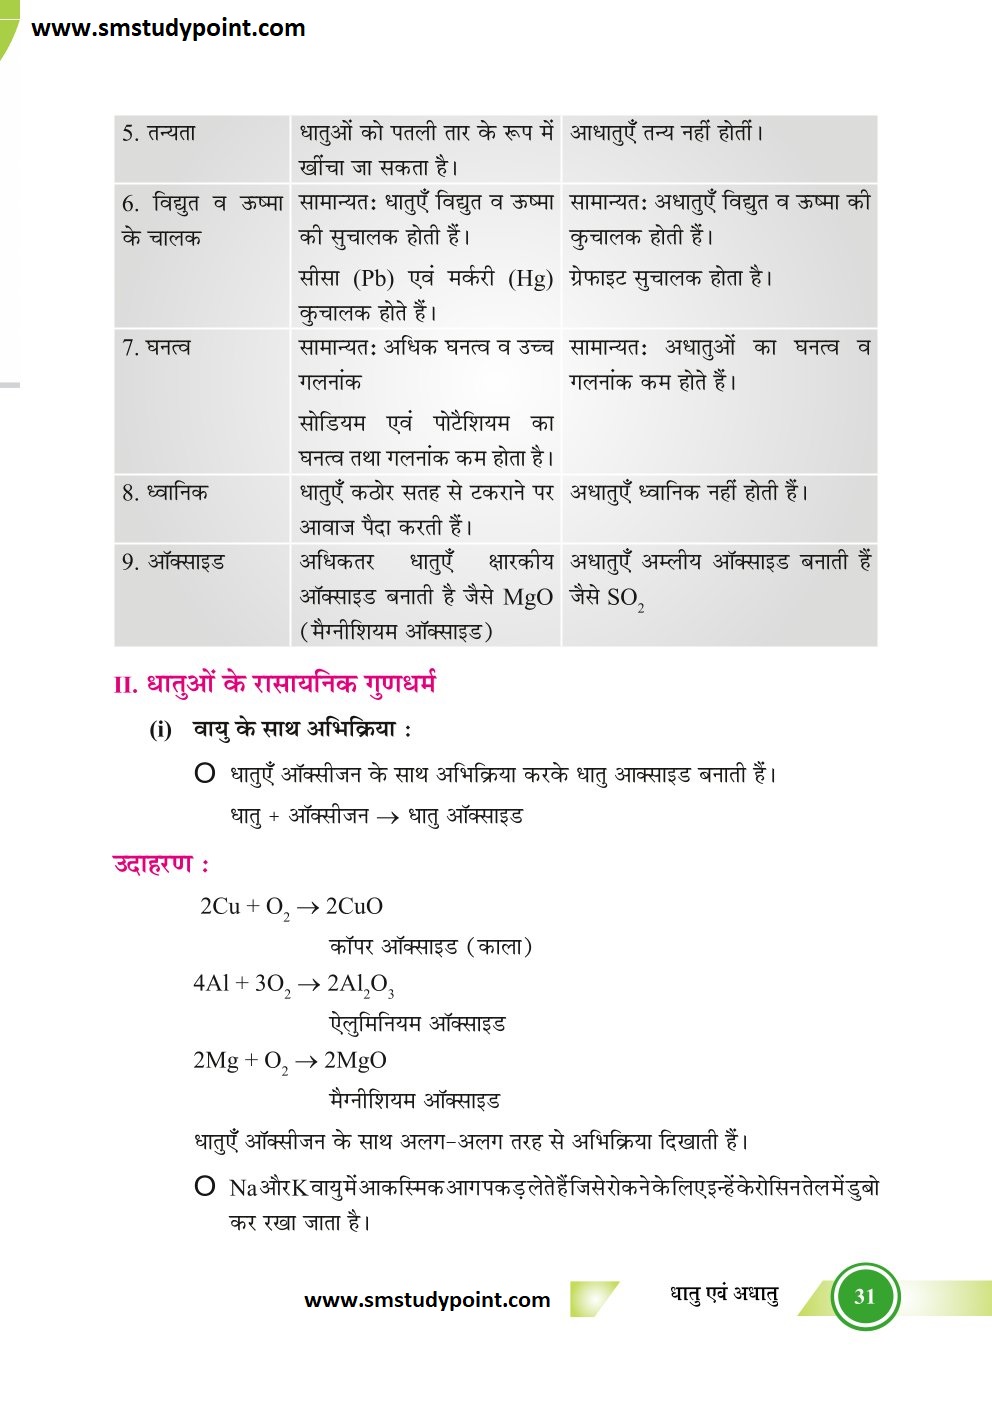 Bihar Board Class 10th Chemistry Notes | Metals and Non-Metals | Class 10 Chemistry Chapter 3 Rivision Notes PDF | धातु एवं अधातु | बिहार बोर्ड क्लास 10वीं रसायनशास्त्र नोट्स | कक्षा 10 रसायन विज्ञान हिंदी में नोट्स